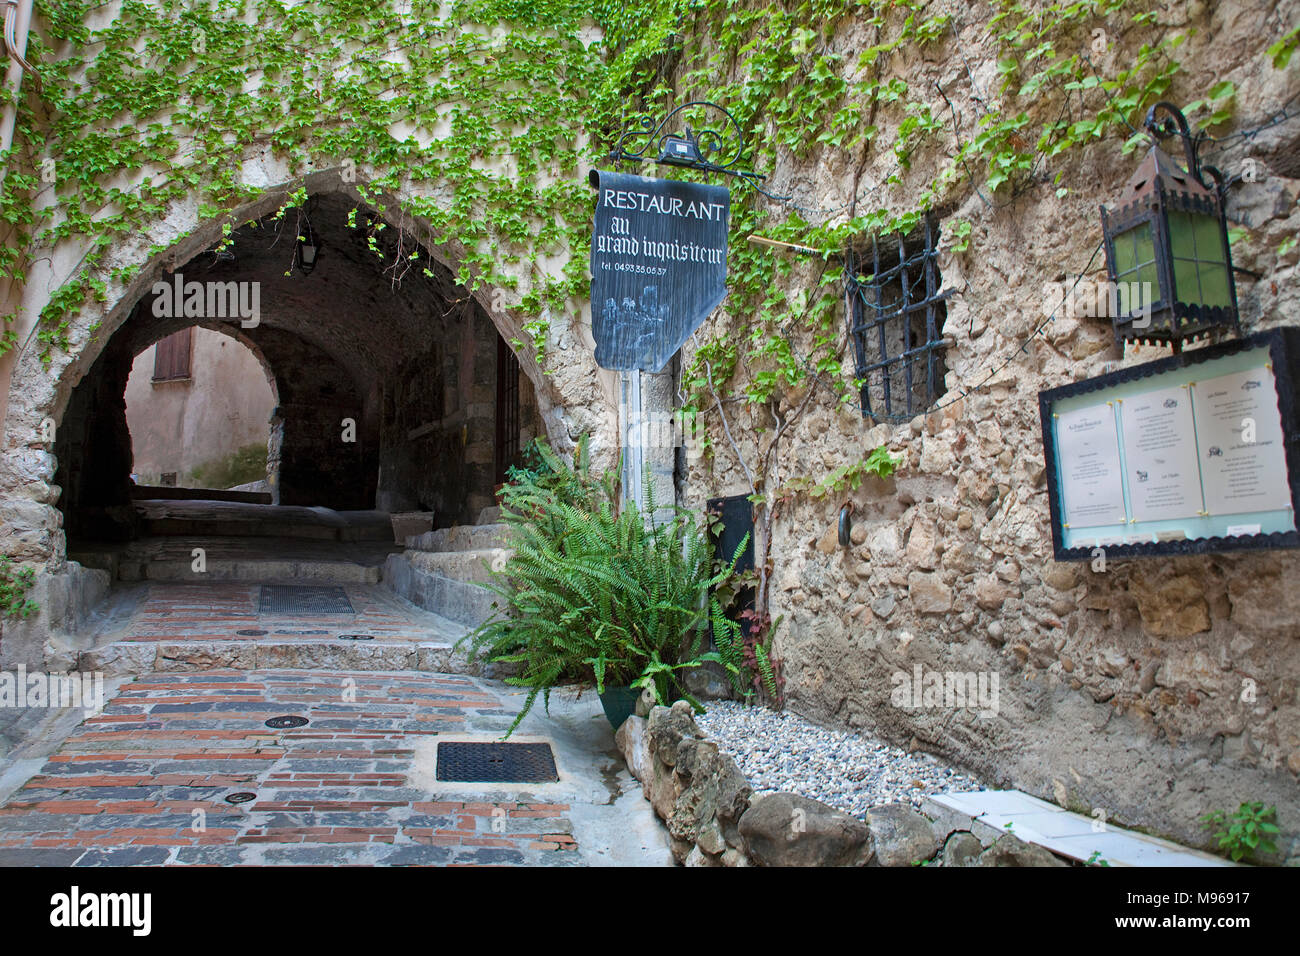 Ristorante al centro medievale della città vecchia di Roquebrune-Cap-Martin, il sud della Francia, Alpes-Maritimes, Cote d'Azur, in Francia, in Europa Foto Stock